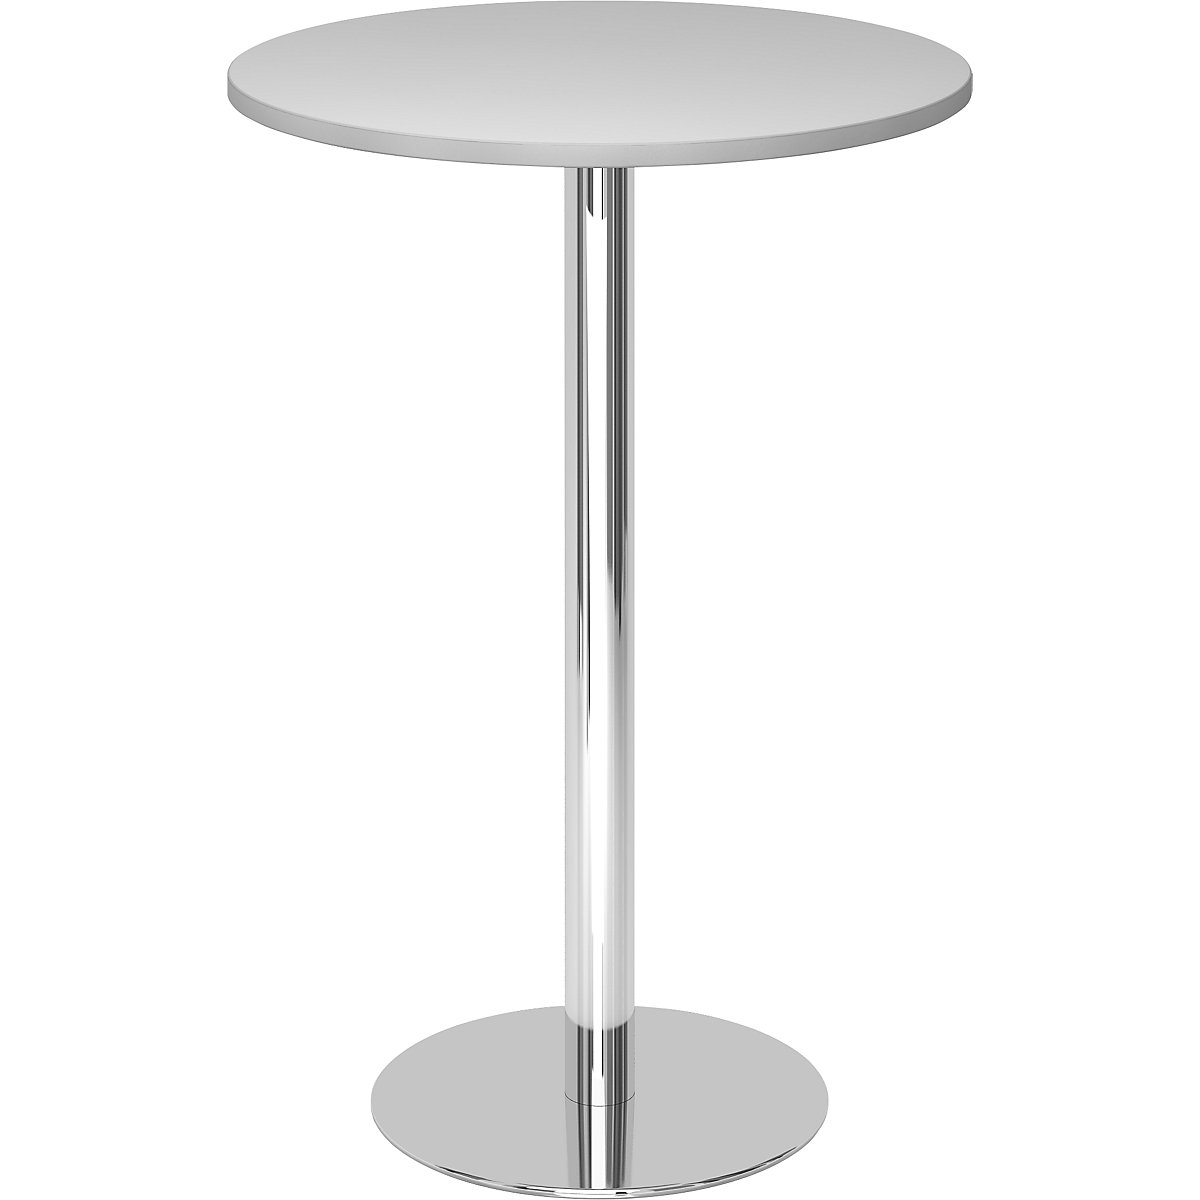 Állóasztal, Ø 800 mm, 1116 mm magas, krómozott váz, világosszürke asztallap-3